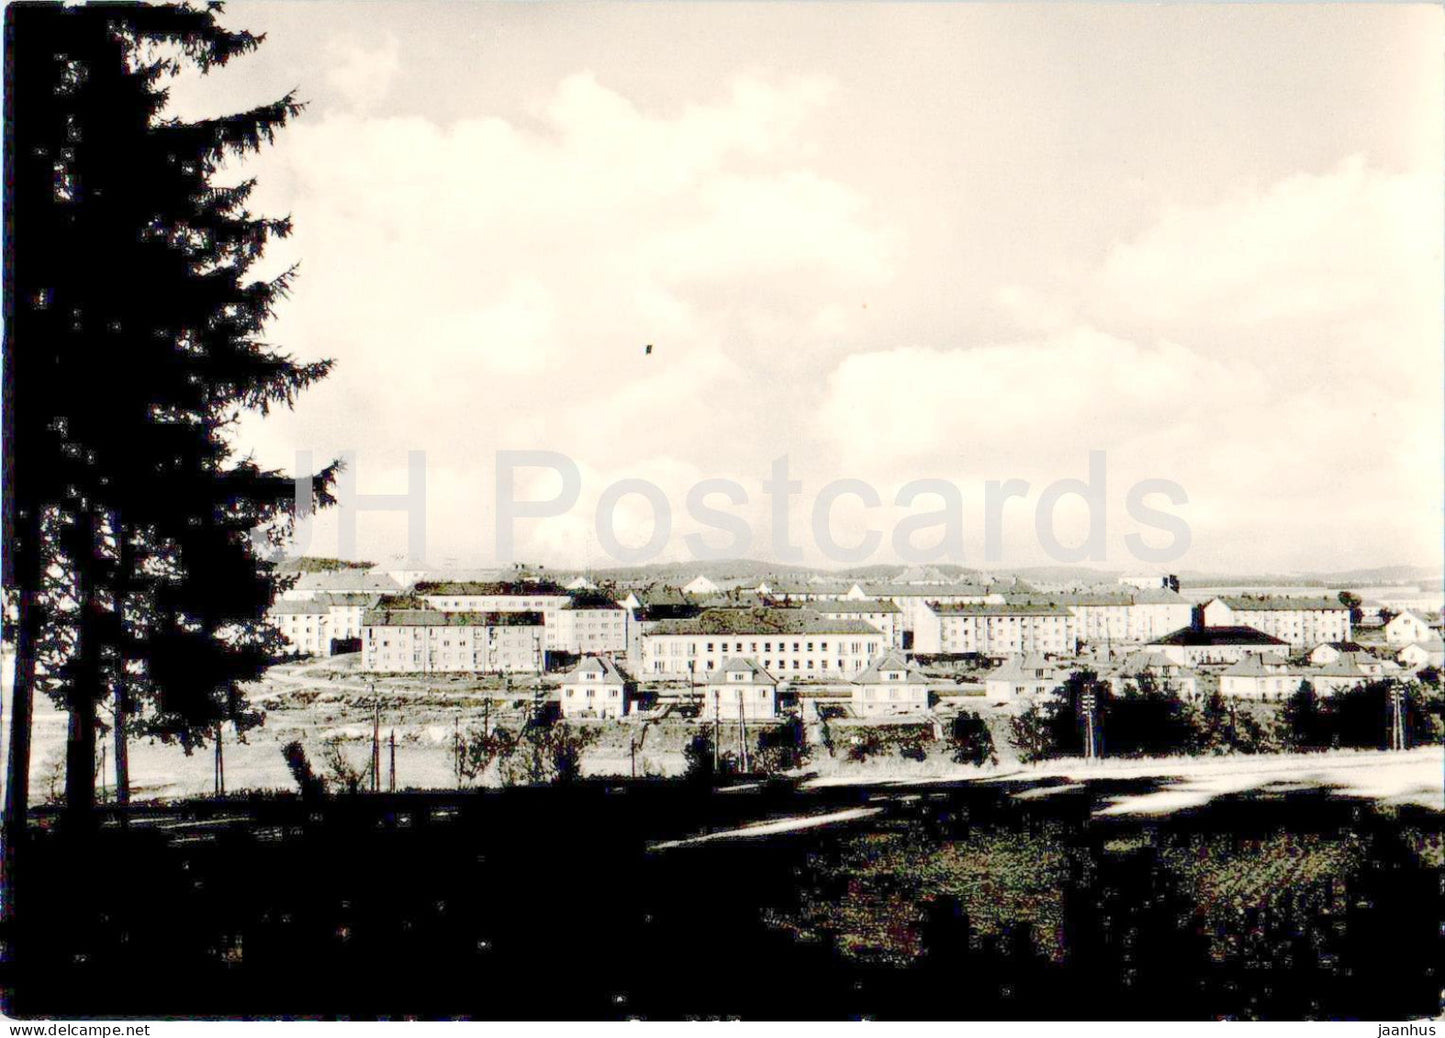 Zdar nad Sazavou - Celkovy pohled - general view - old postcard - Czech Repubic - Czechoslovakia - used - JH Postcards